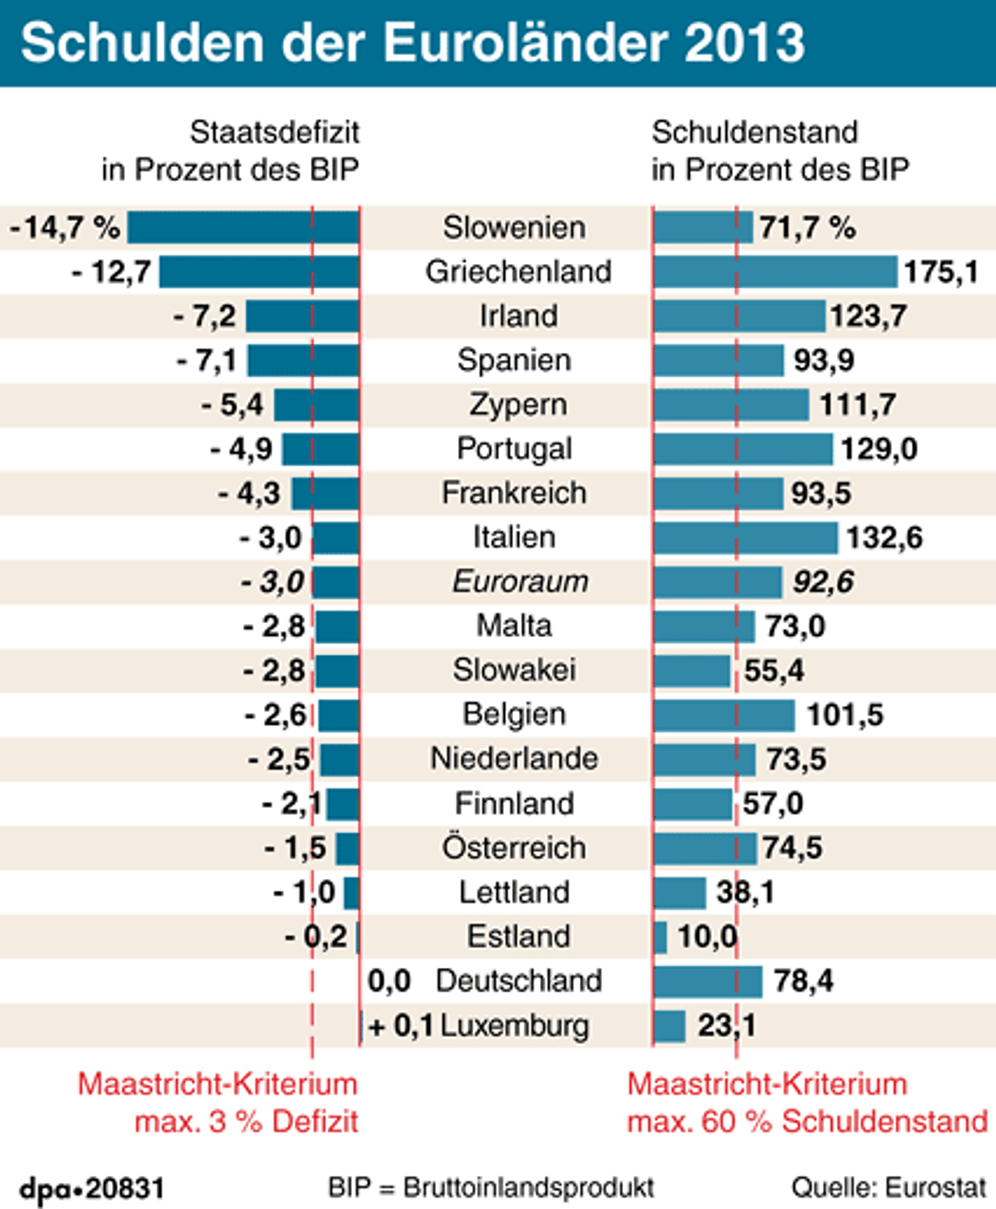 Berechnet von Eurostat: Schulden der Euroländer 2013